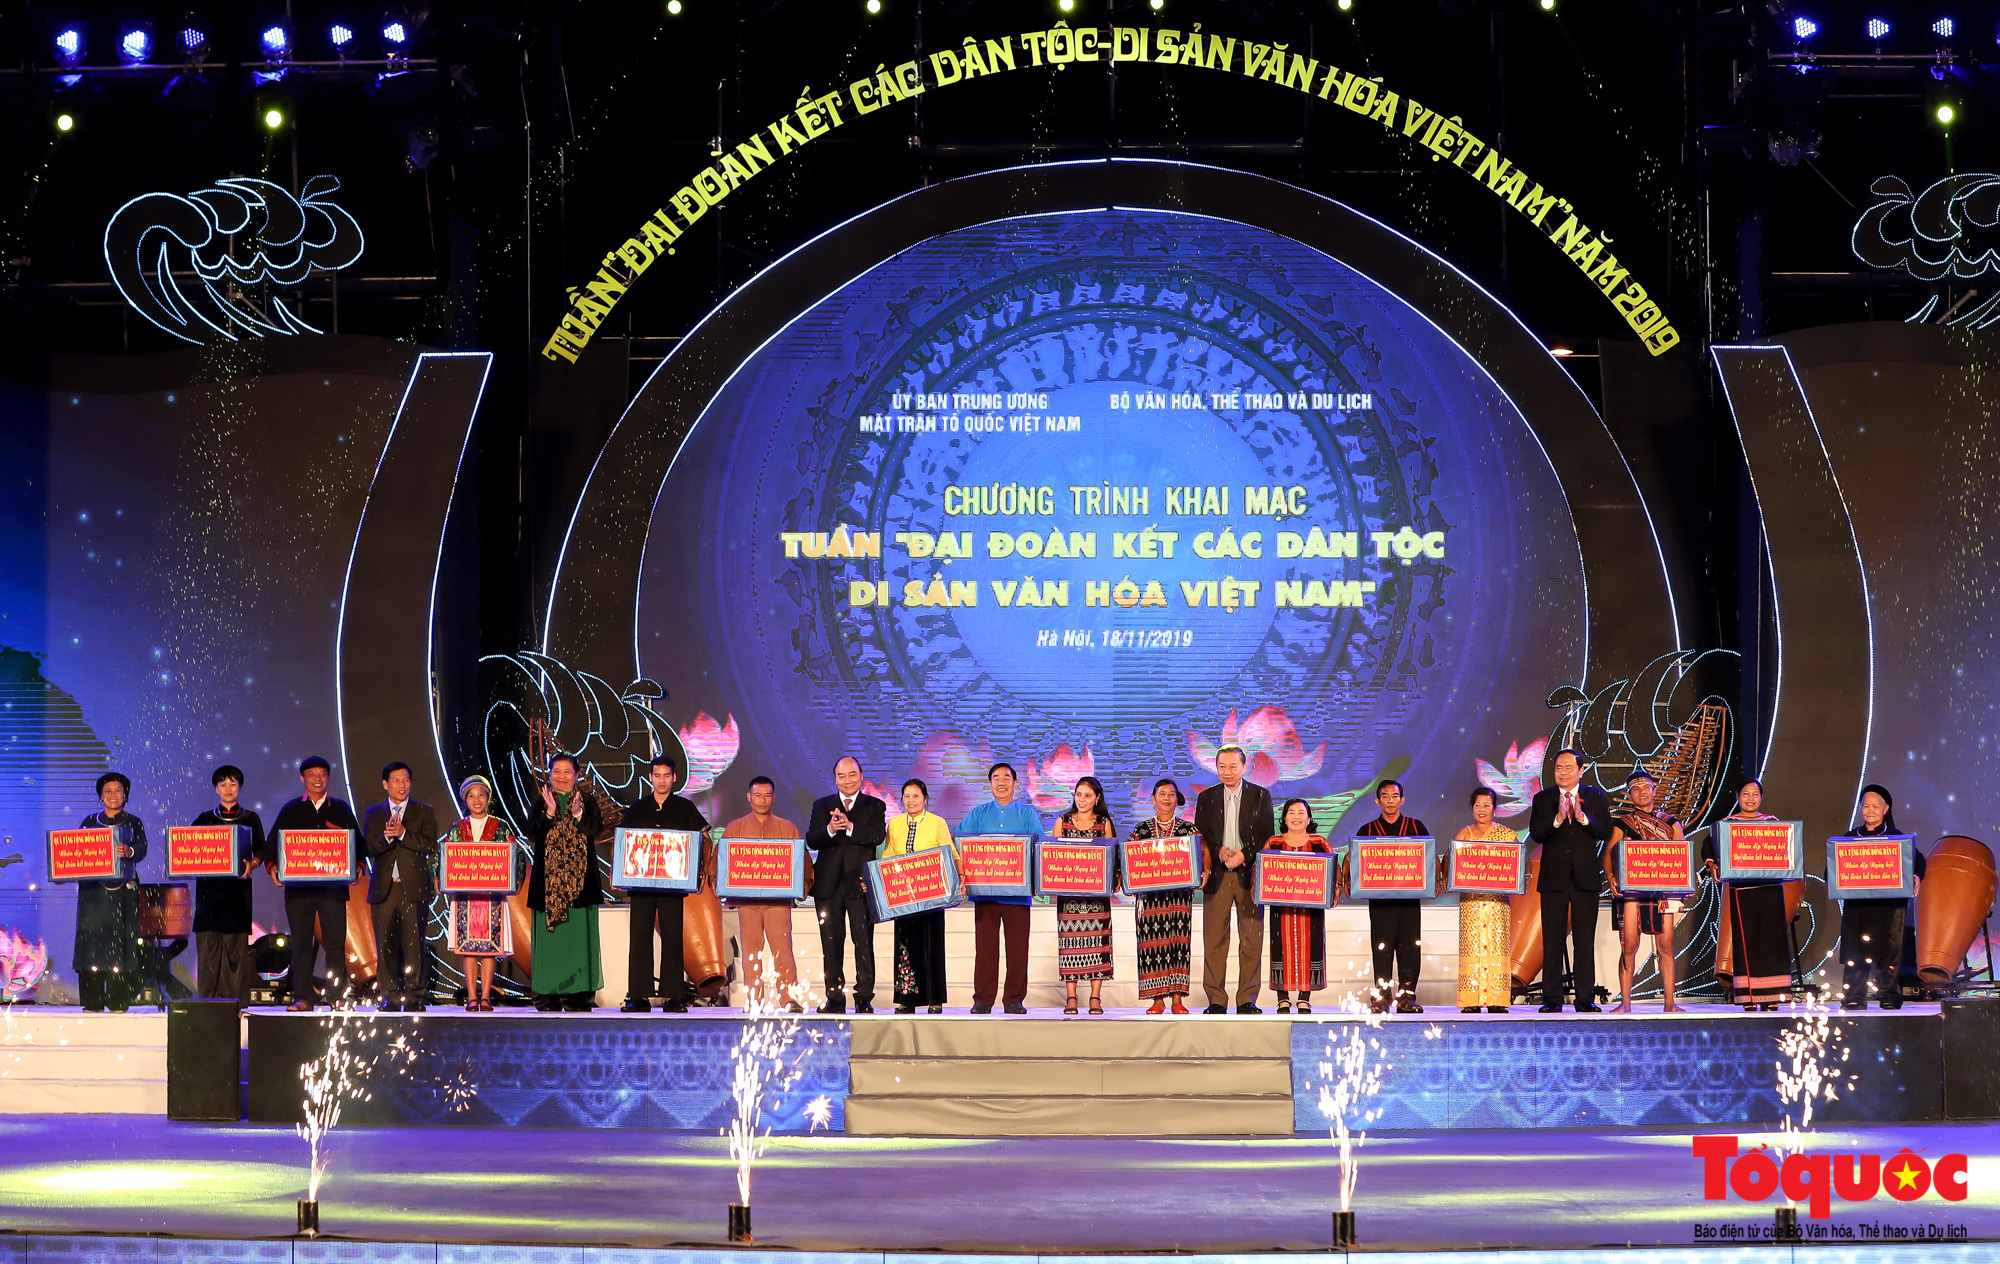 Hình ảnh ấn tượng trong lễ khai mạc Tuần “Đại đoàn kết các dân tộc - Di sản Văn hoá Việt Nam” năm 2019 - Ảnh 5.